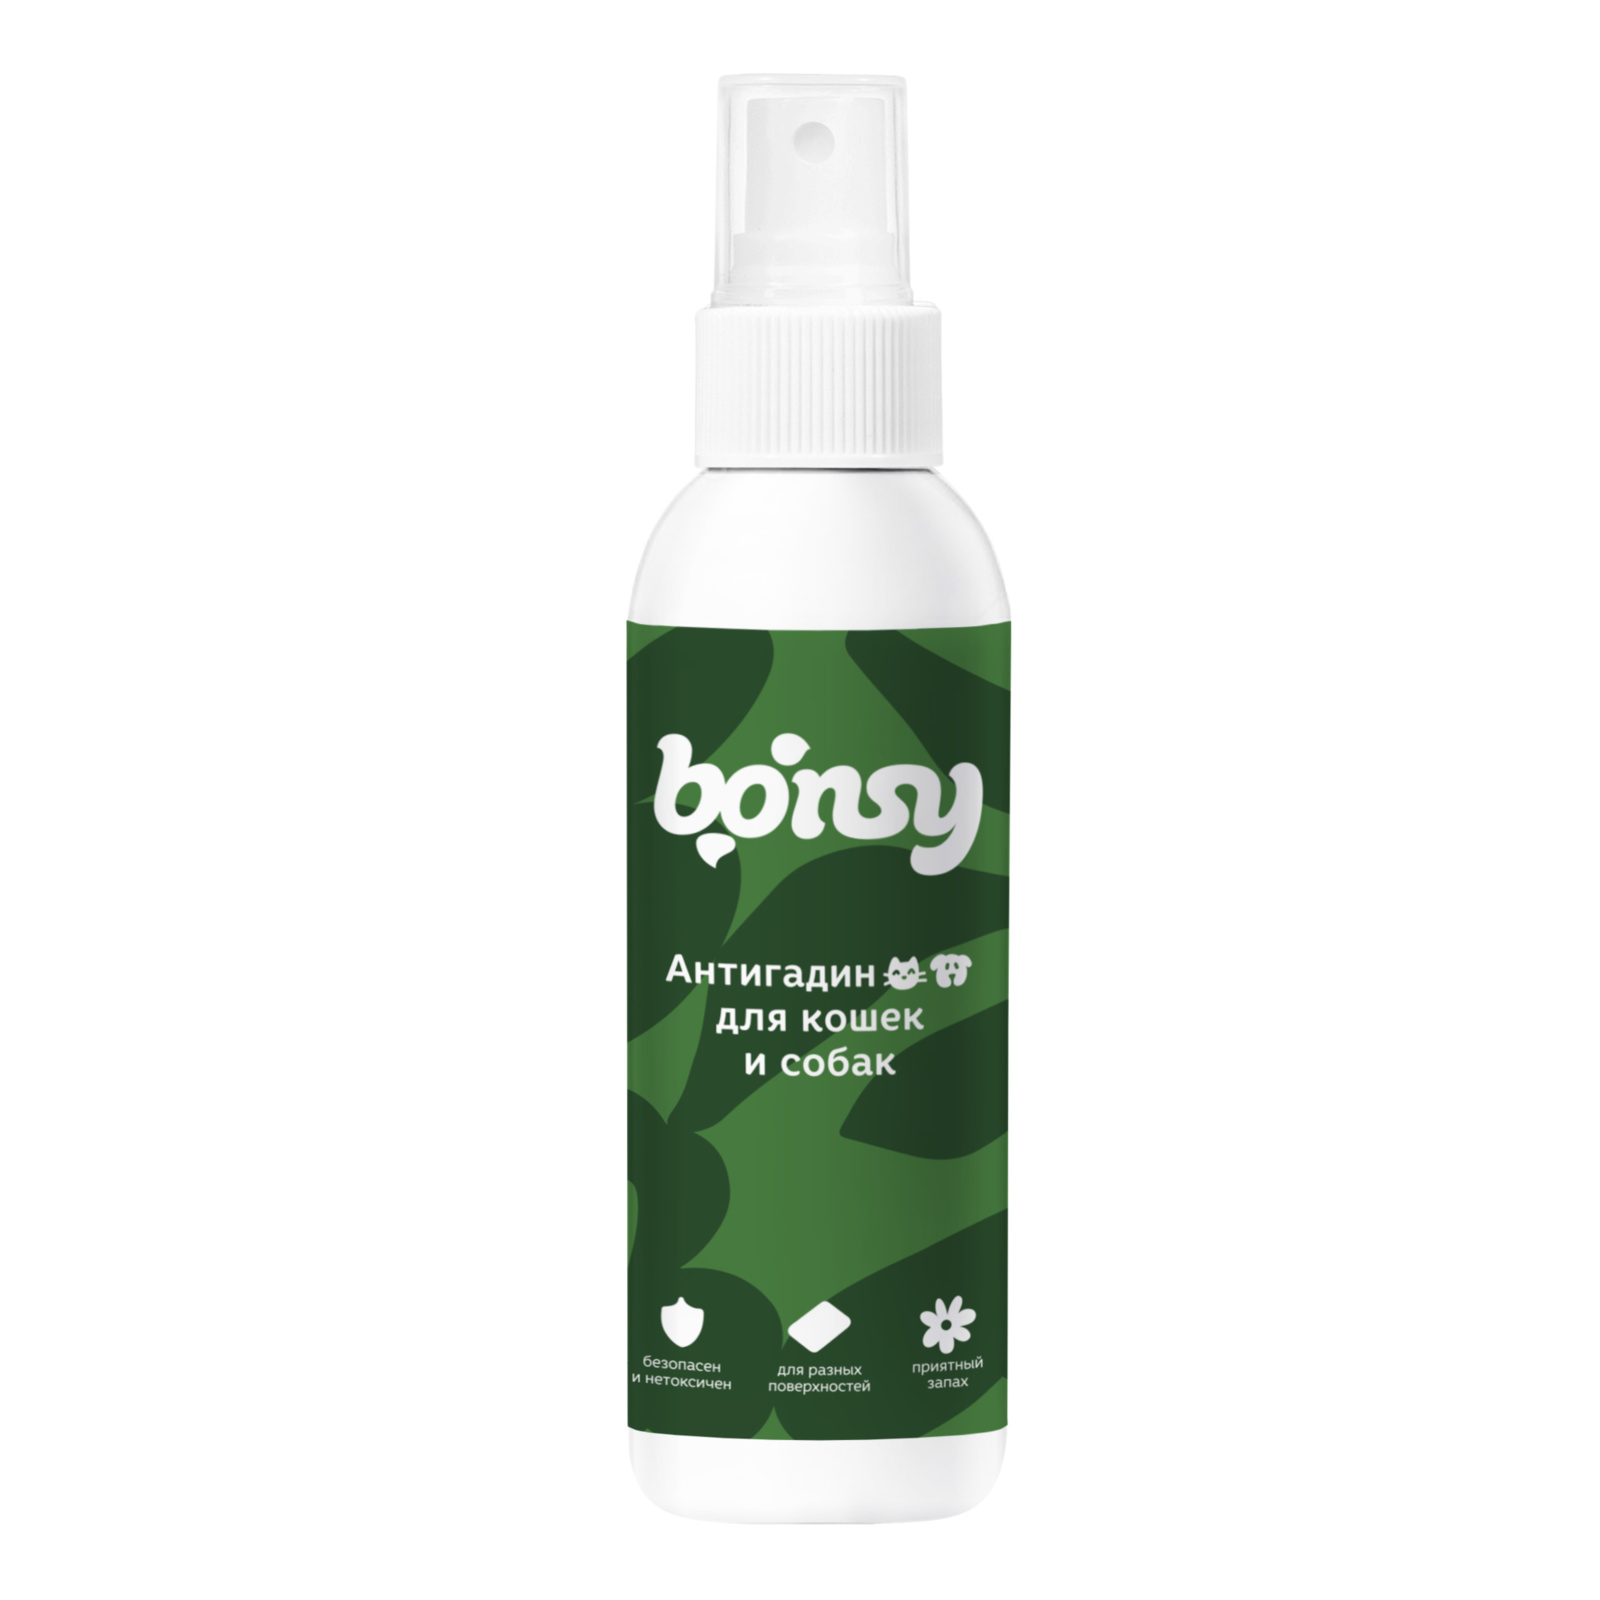 Bonsy антигадин для кошек и собак (150 г)